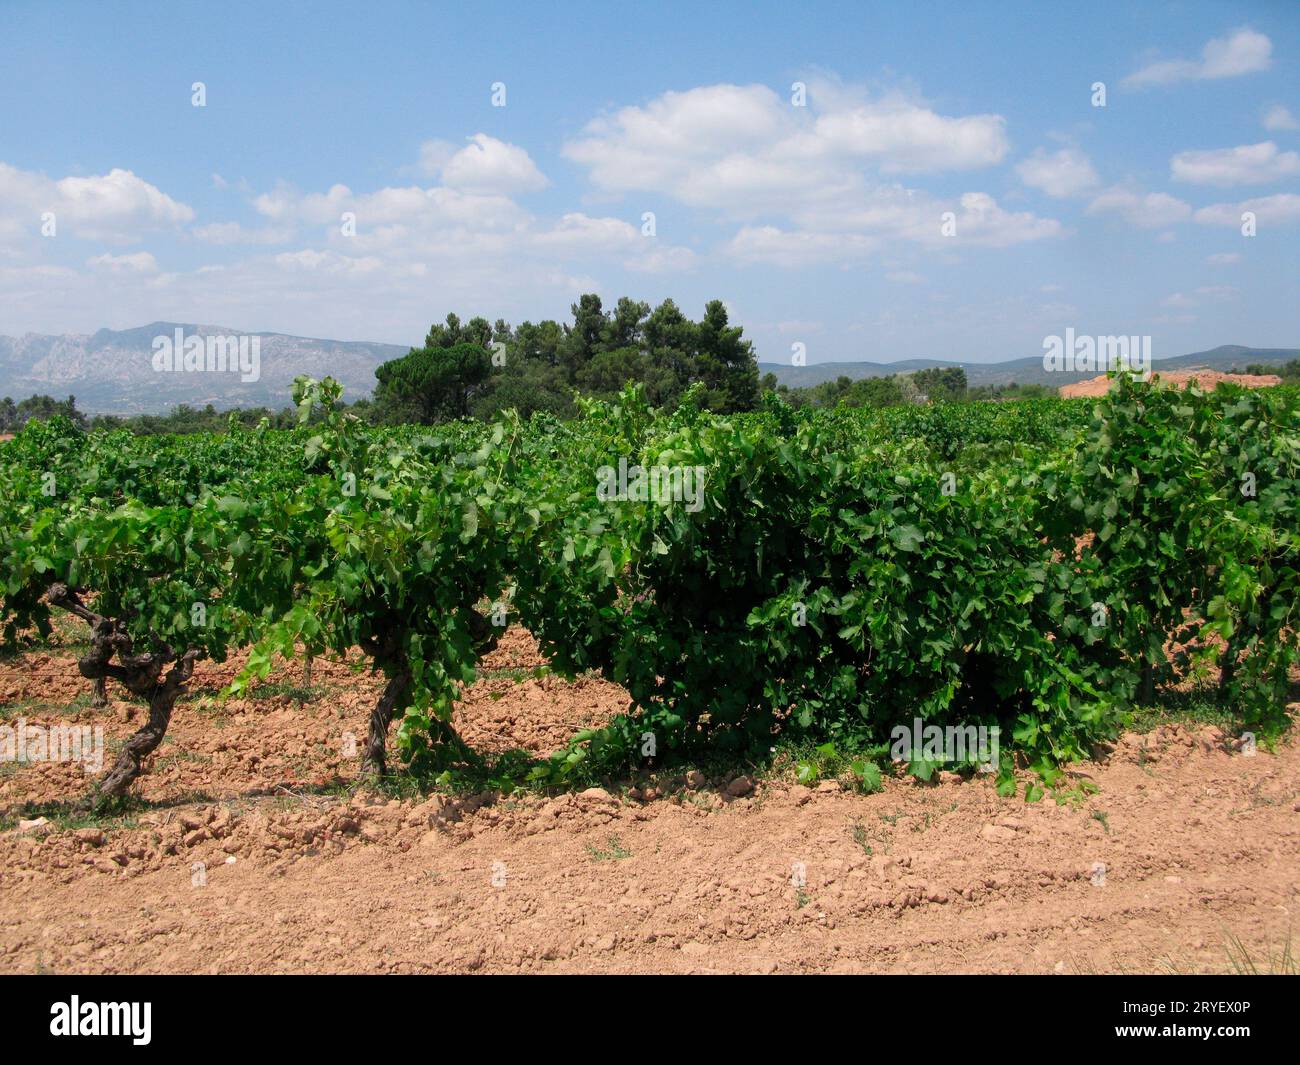 Paysage viticole et viticulture en Provence, France Banque D'Images